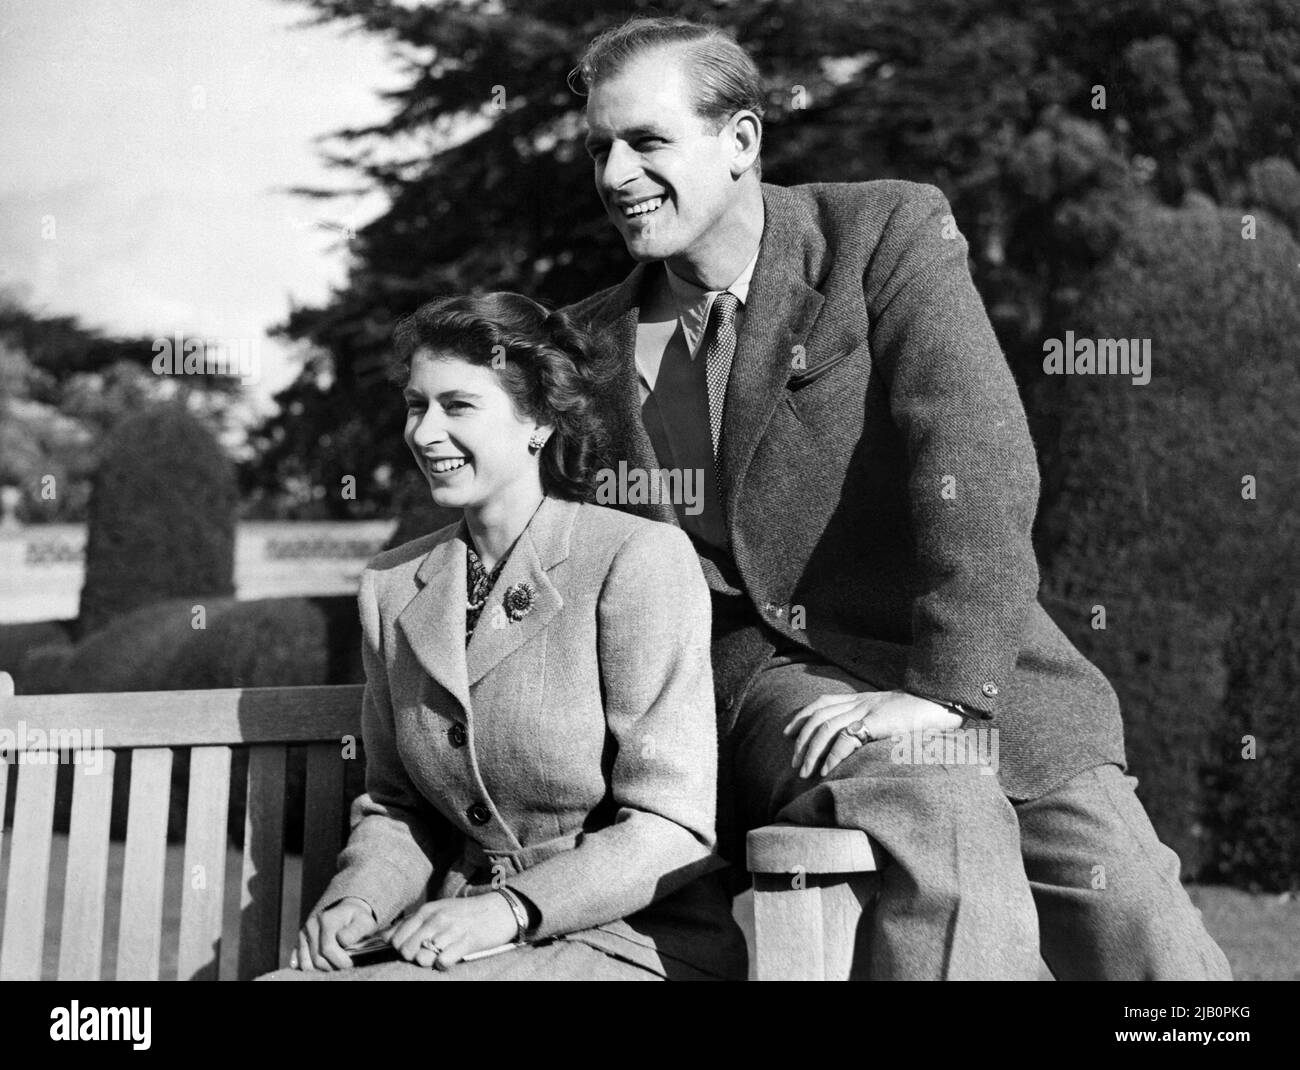 La princesa de Gran Bretaña Elizabeth (futura reina Elizabeth II) y su marido Philip, duque de Edimburgo, posan durante su luna de miel, el 25 de noviembre de 1947 en Broadlands Estate, Hampshire Foto de stock